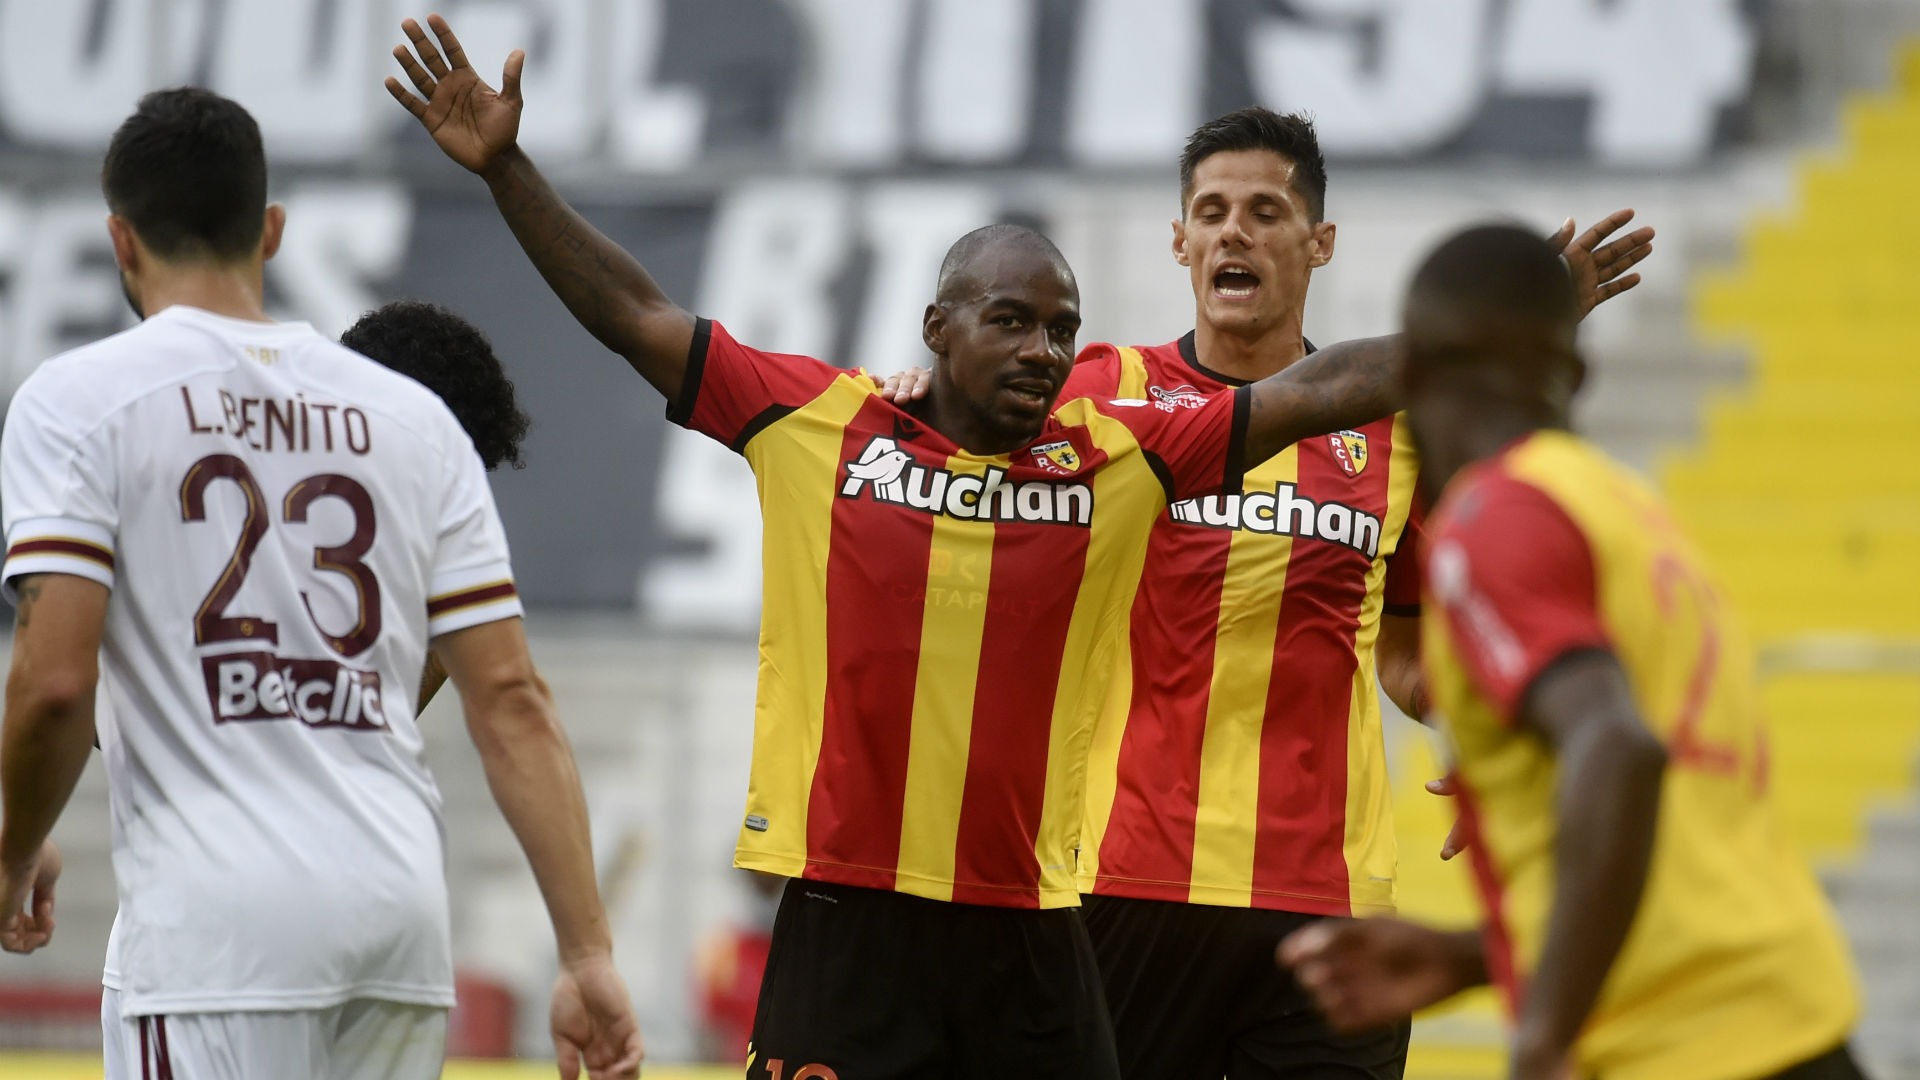 Lens - Bordeaux (2-1), Les Lensois enchainent une troisième victoire de suite | Goal.com